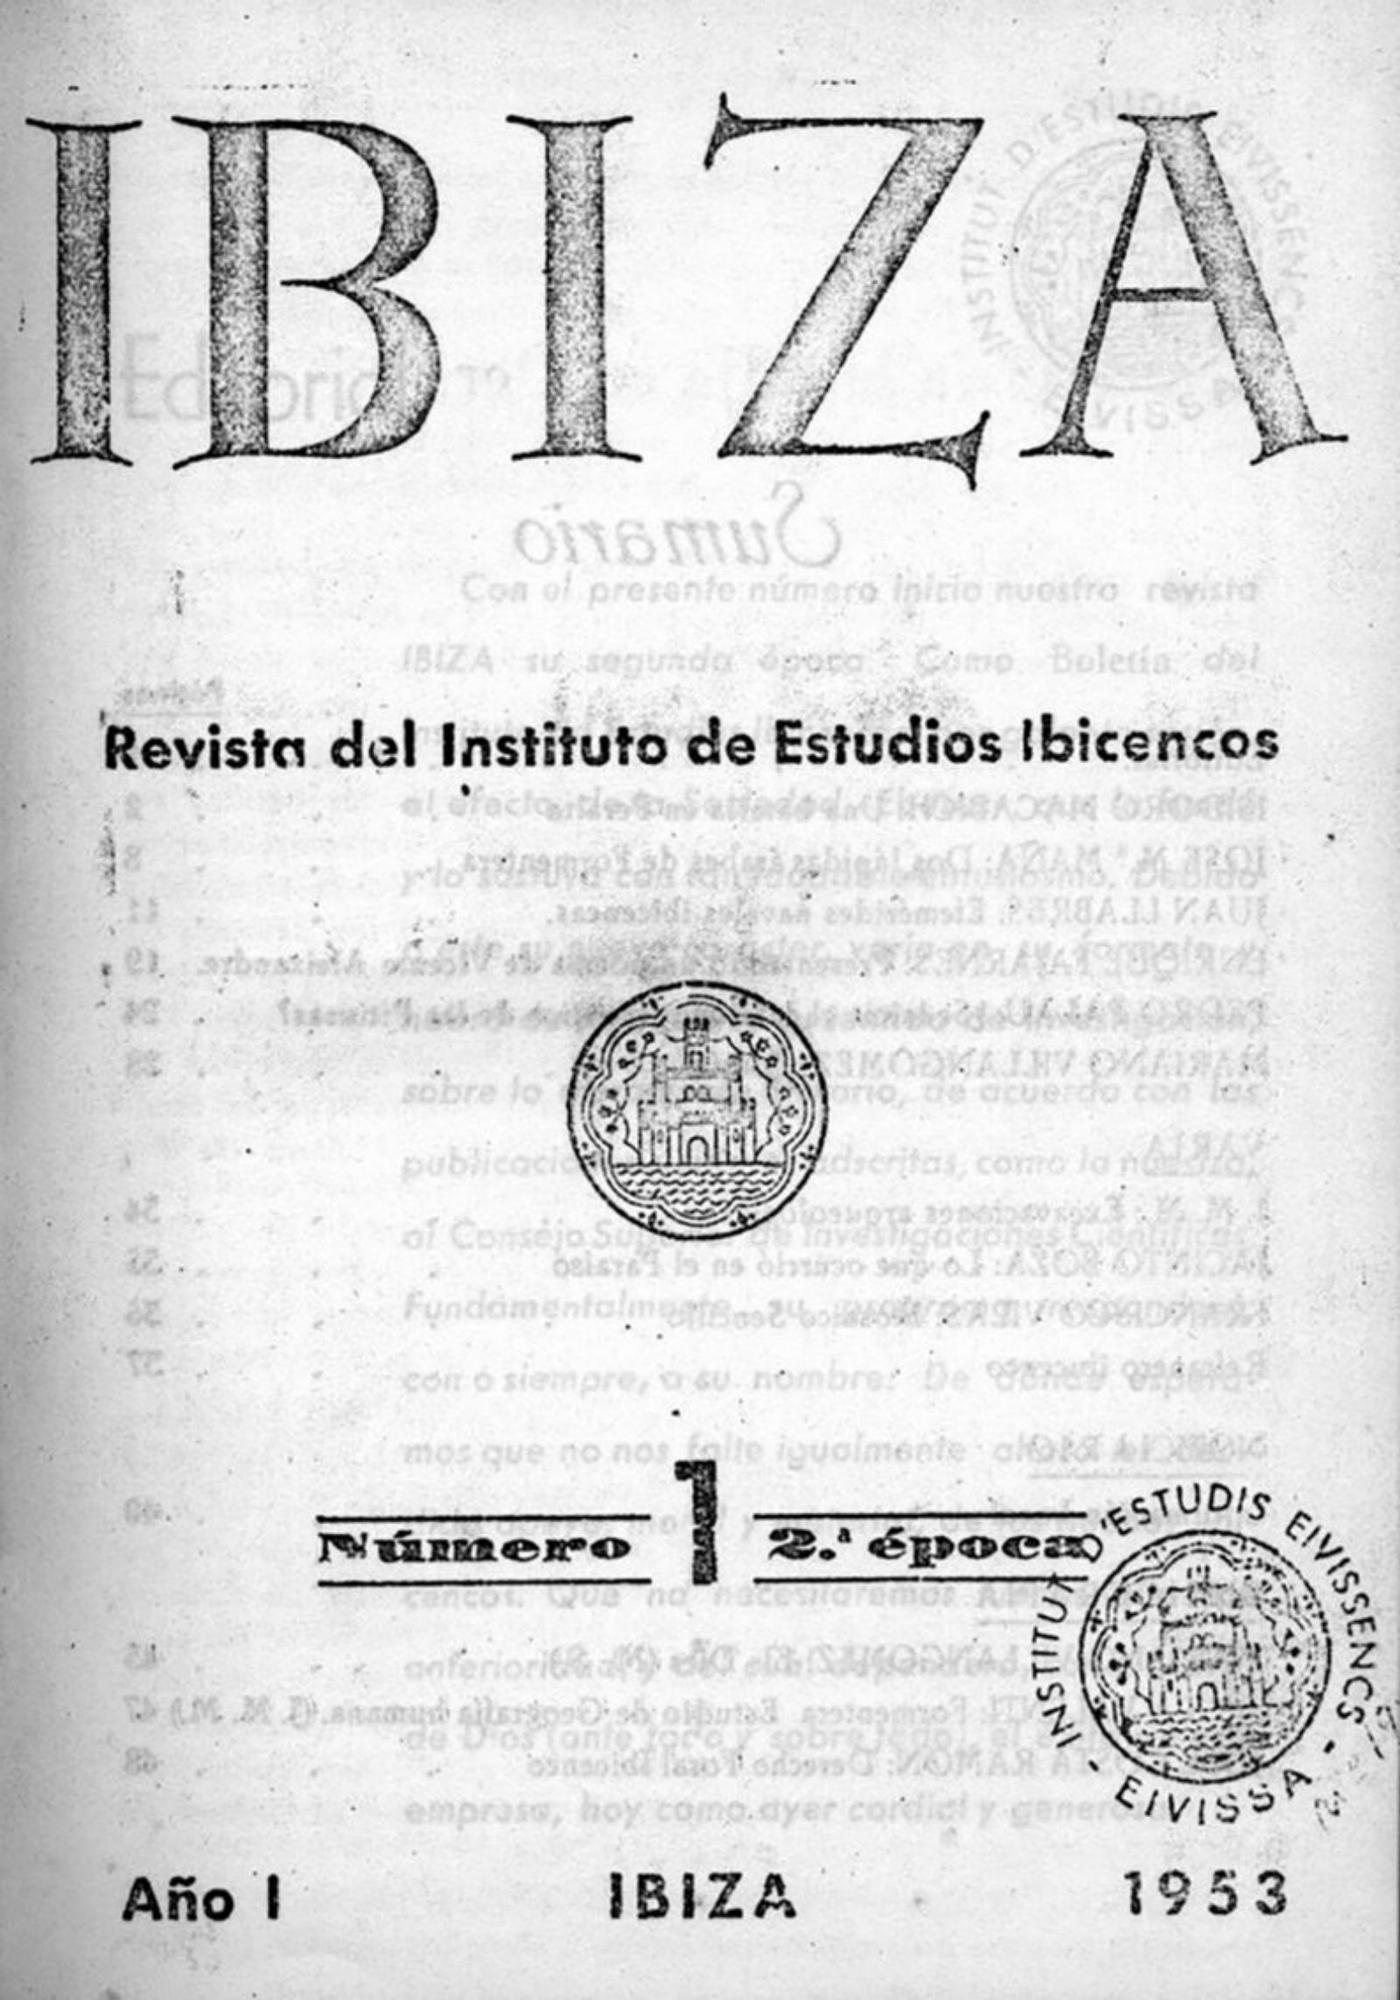 Eivissa revista 2. Portada del número 1 de la revista Eivissa, de la segona època, corresponent a l’any 1953, ja editat per l’Instituto de Estudios Ibicencos.